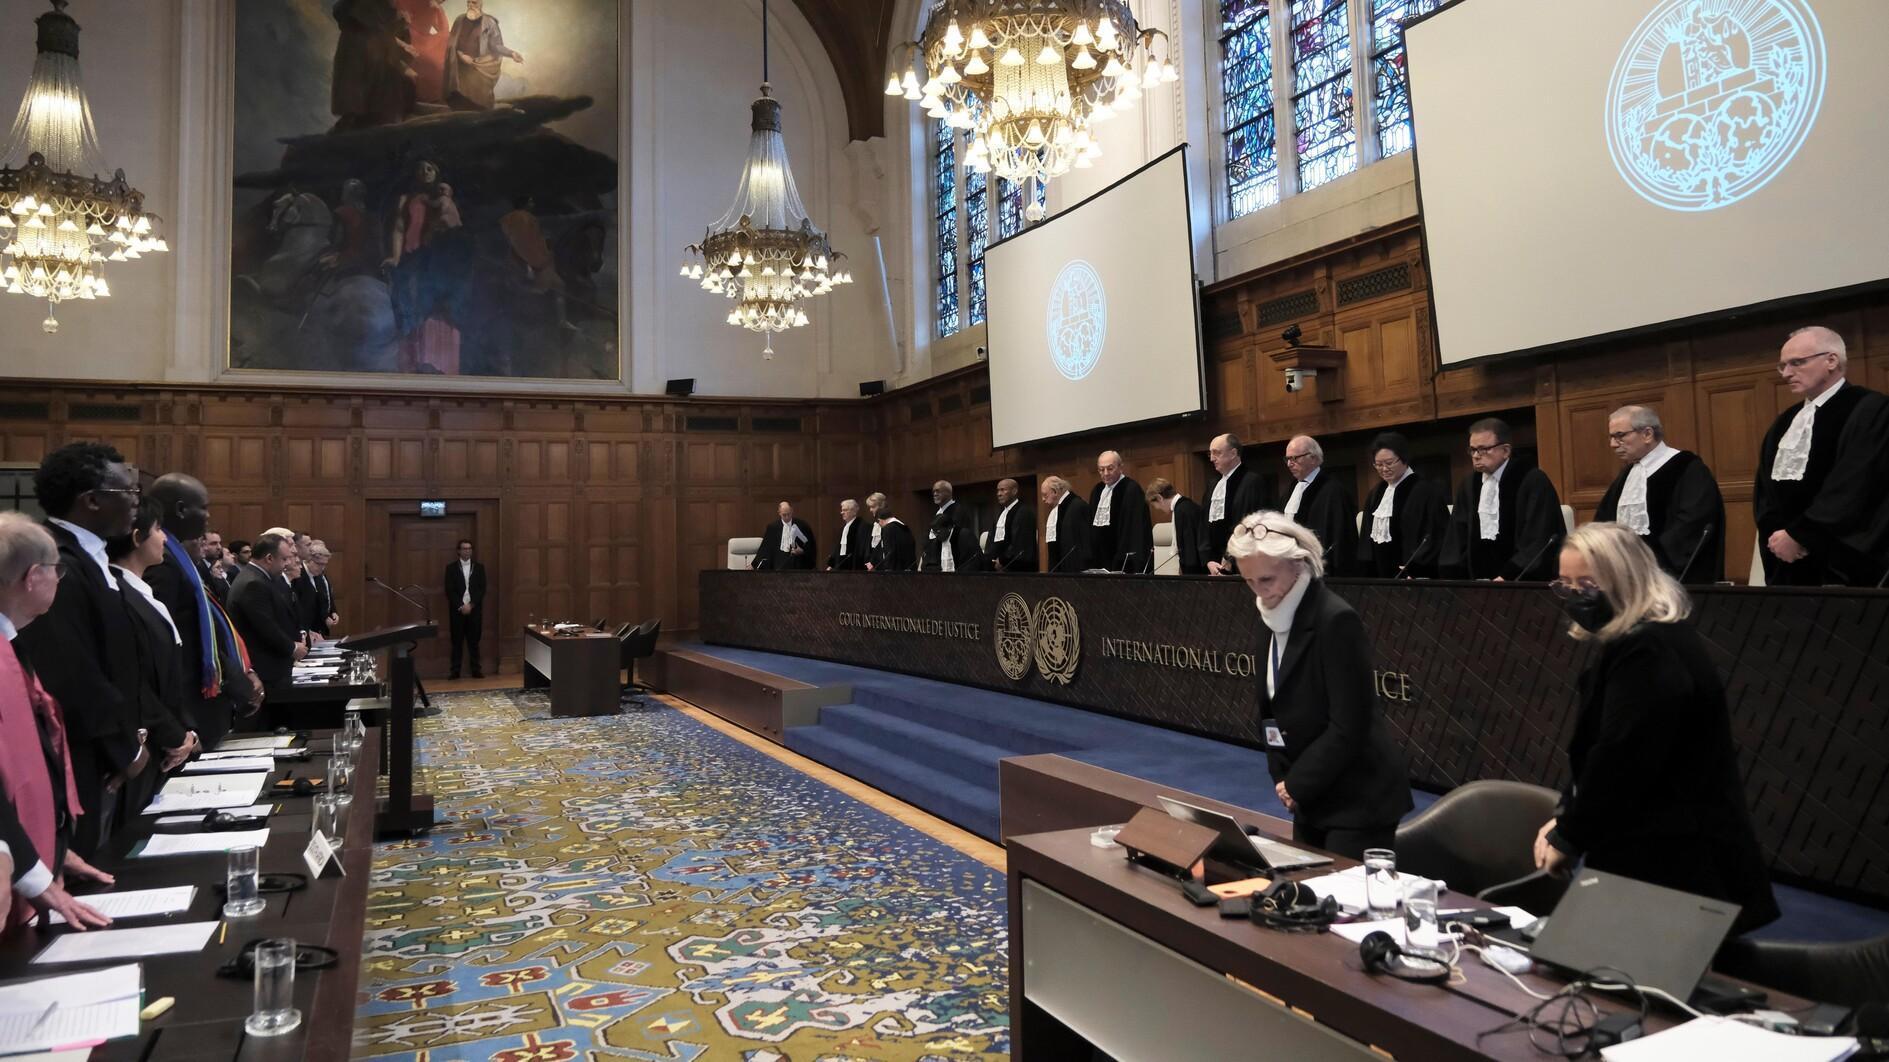 Türkiye gaat verklaring afleggen voor het Internationaal Gerechtshof over Israël